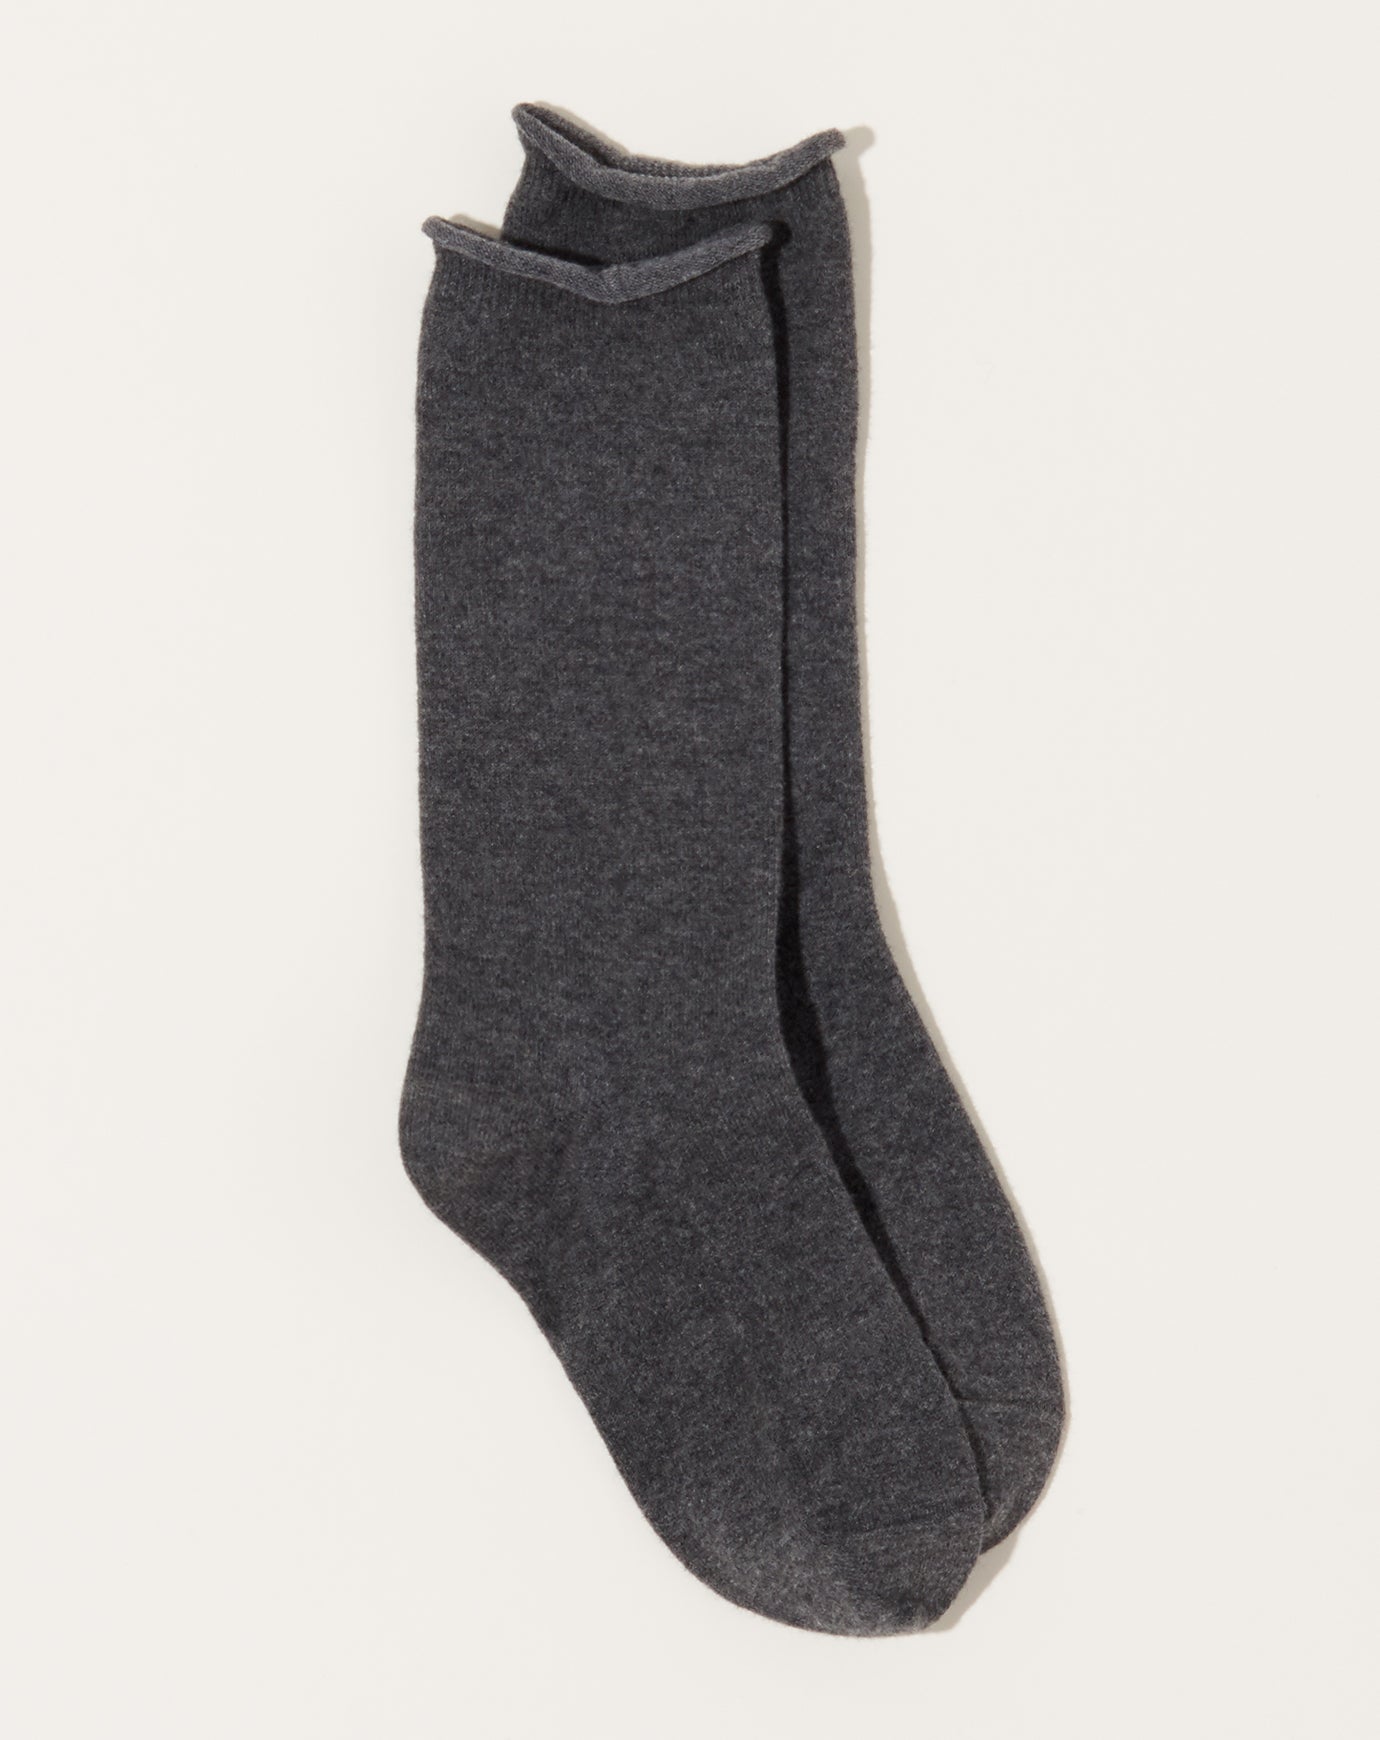 Nishiguchi Kutsushita Cashmere Cotton Socks in Charcoal